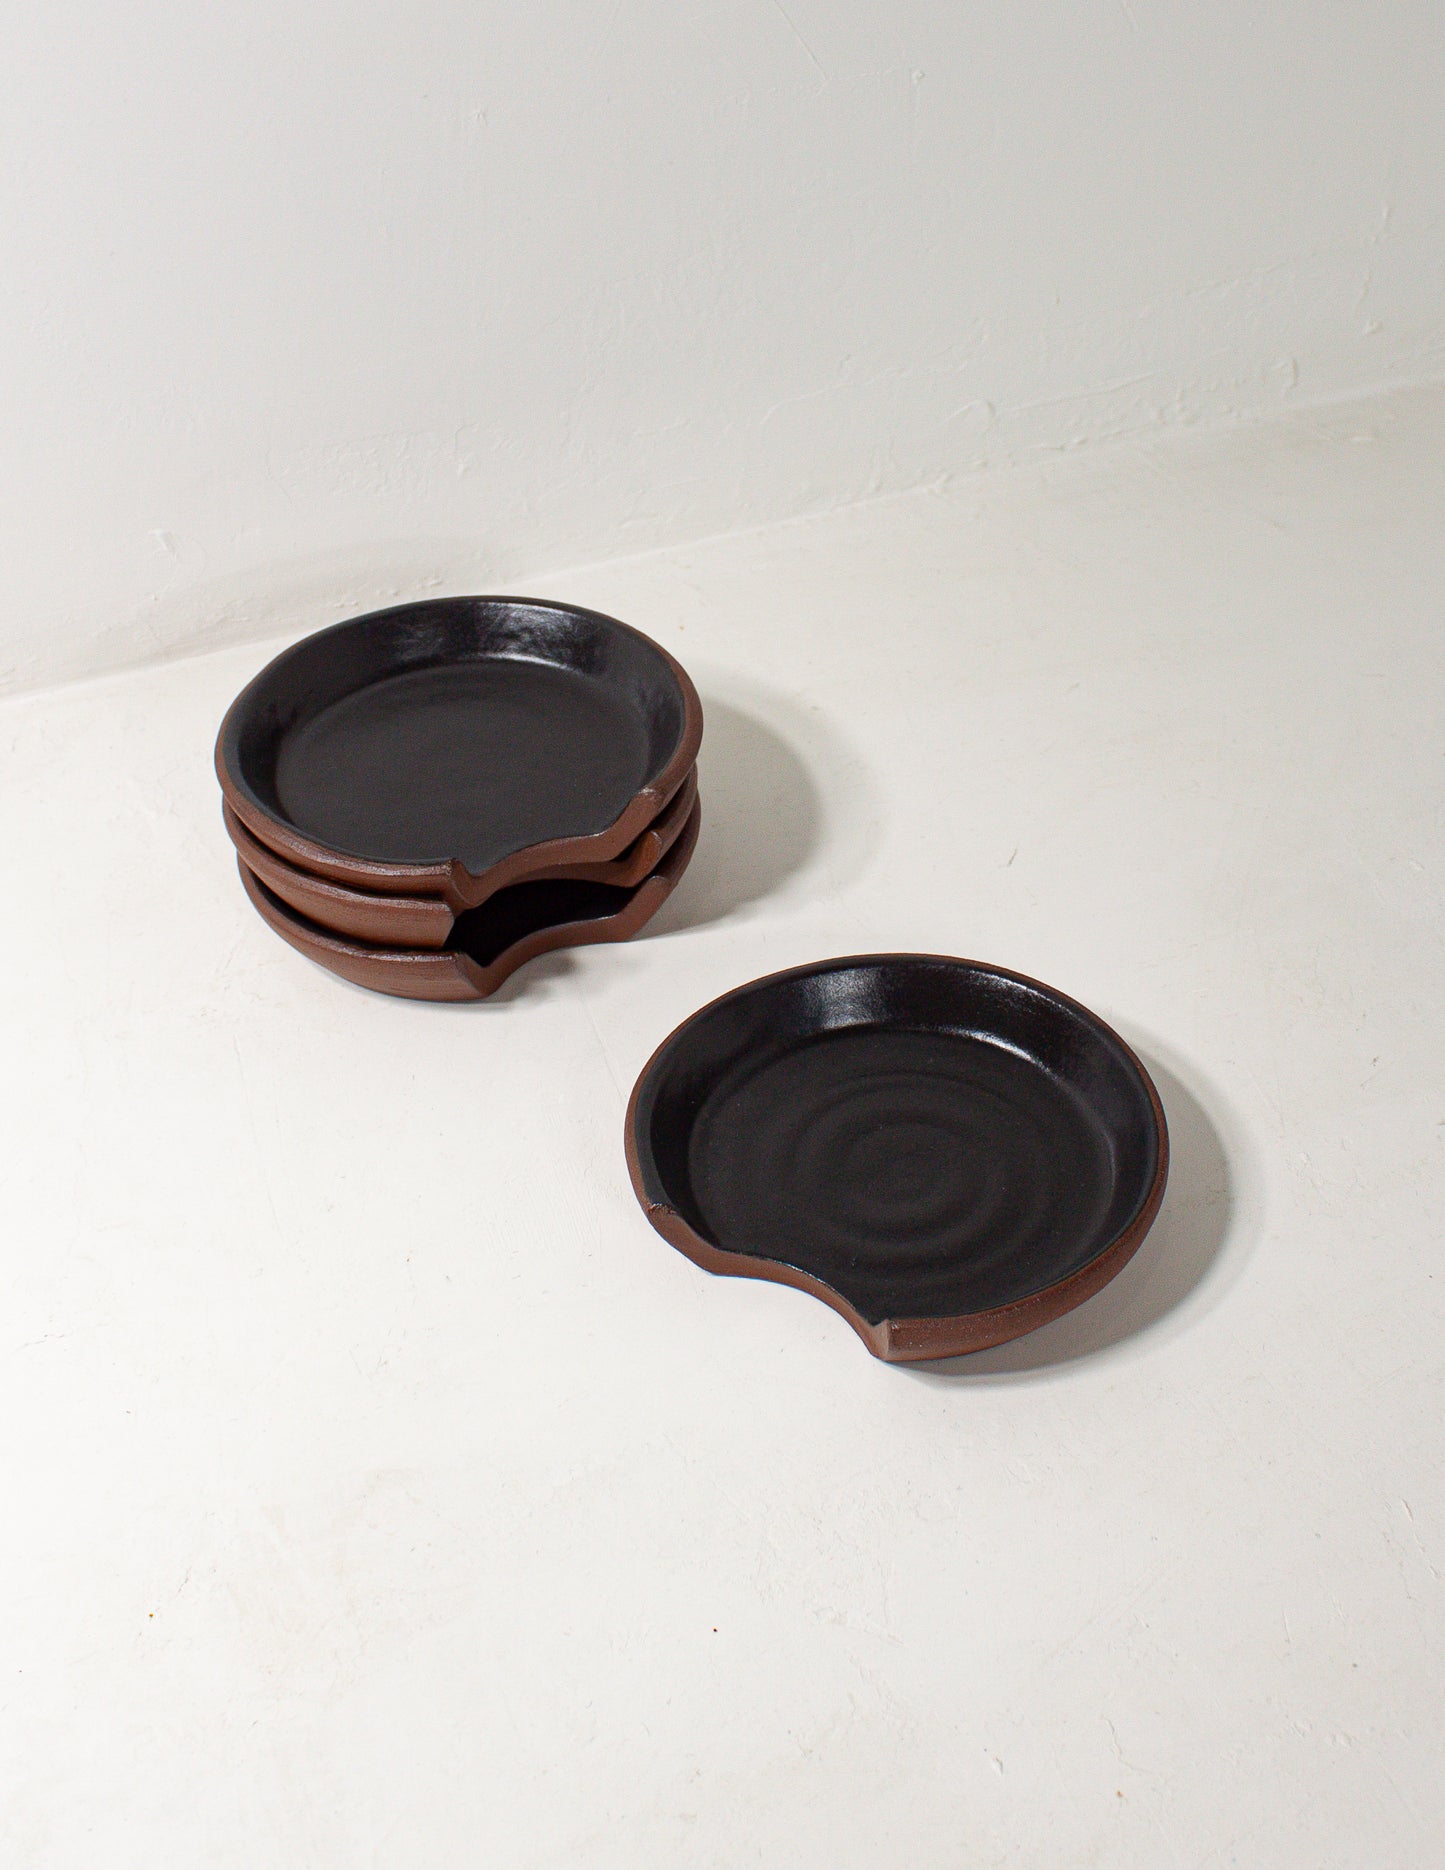 handmade ceramic spoon rest in black glaze